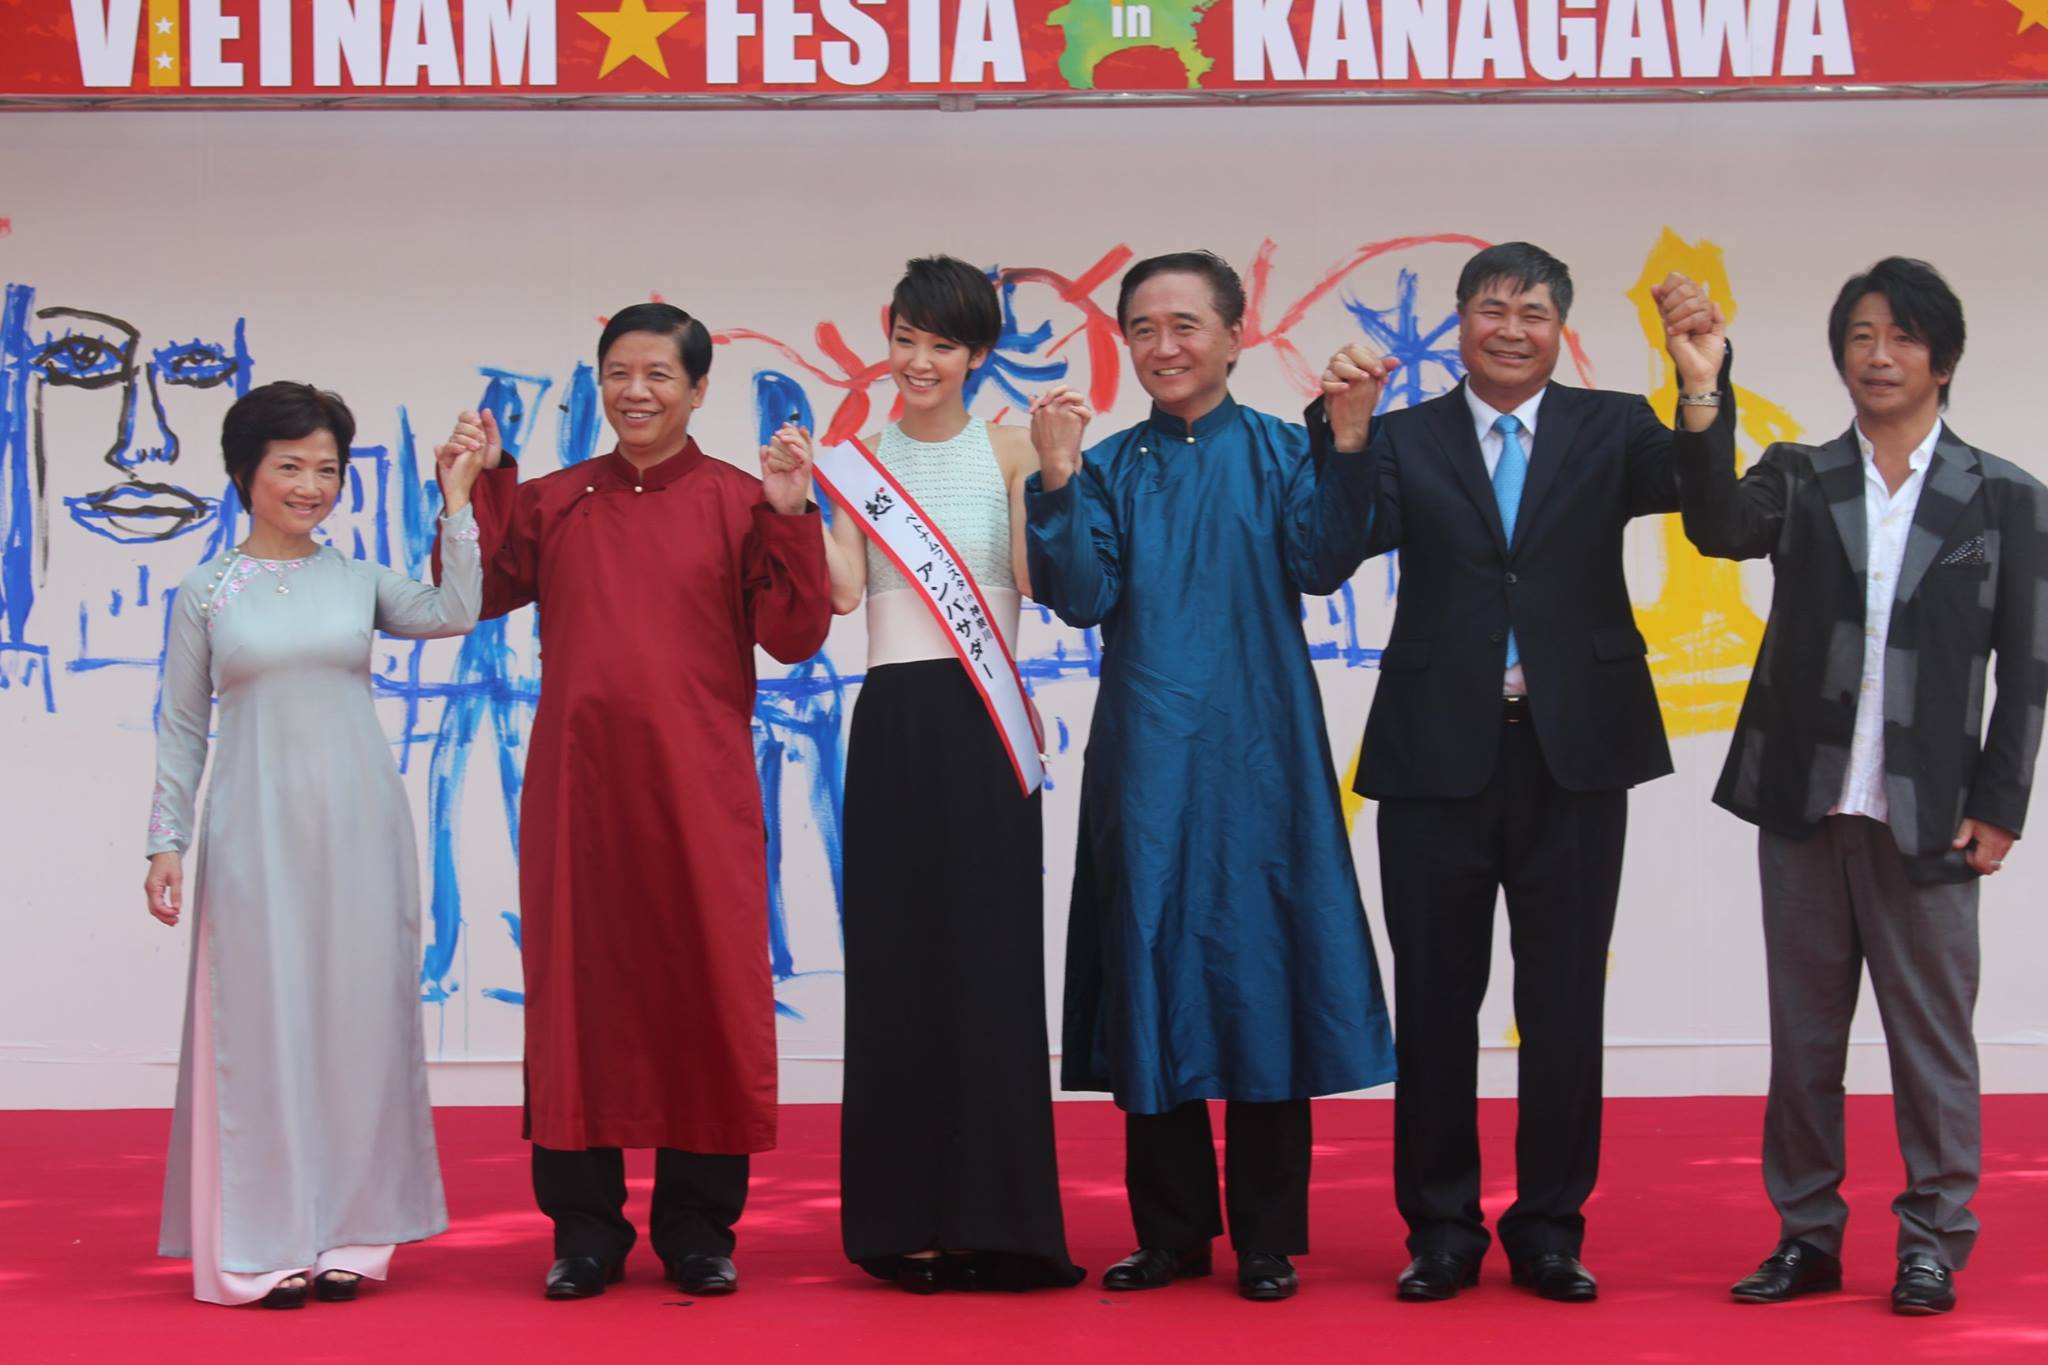 Kanagawa – Lễ hội Việt gắn kết tình hữu nghị Việt – Nhật